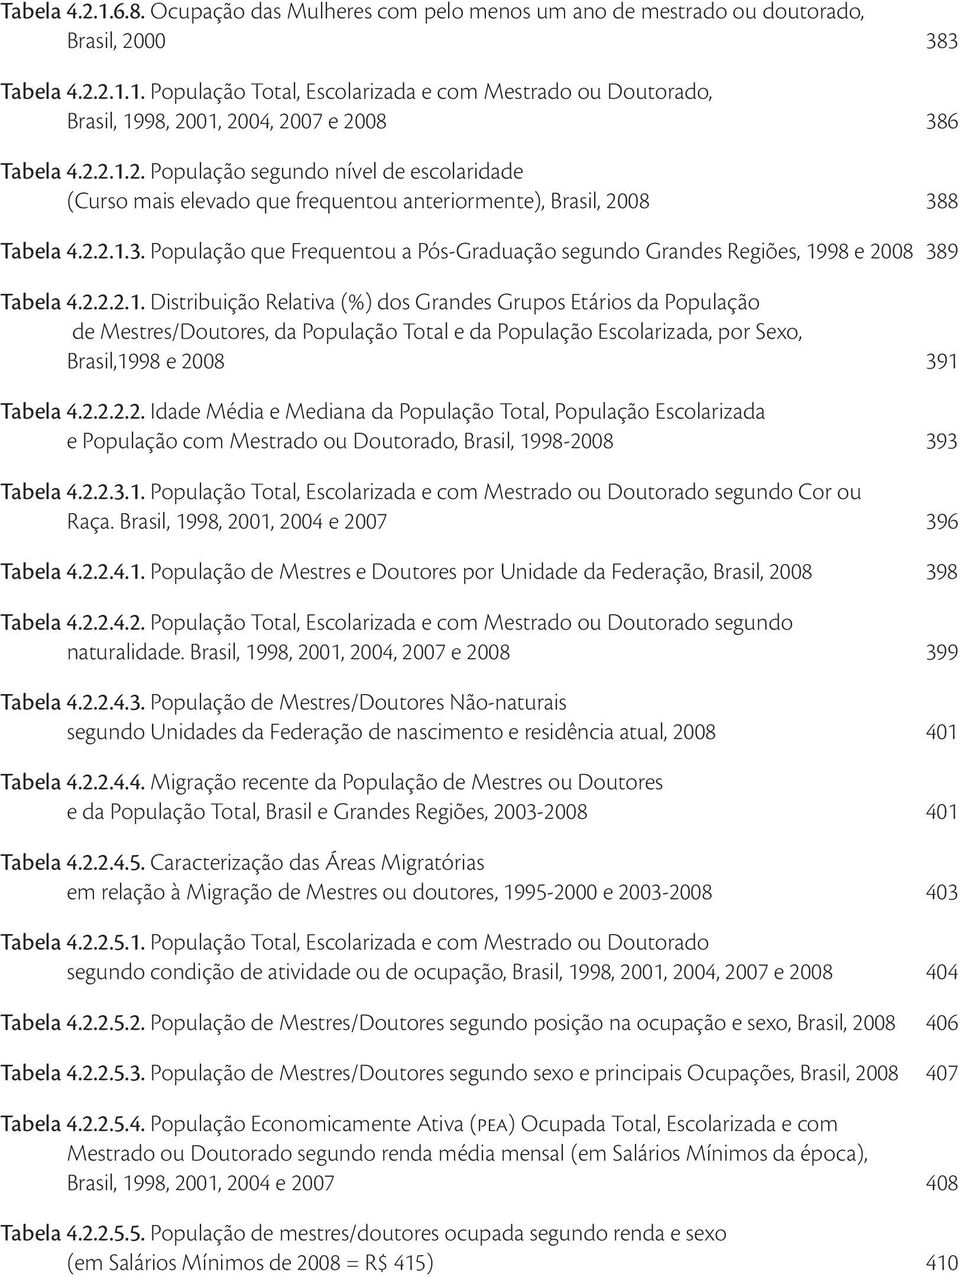 8 Tabela 4.2.2.1.3. População que Frequentou a Pós-Graduação segundo Grandes Regiões, 1998 e 2008 389 Tabela 4.2.2.2.1. Distribuição Relativa (%) dos Grandes Grupos Etários da População de Mestres/Doutores, da População Total e da População Escolarizada, por Sexo, Brasil,1998 e 2008 391 Tabela 4.